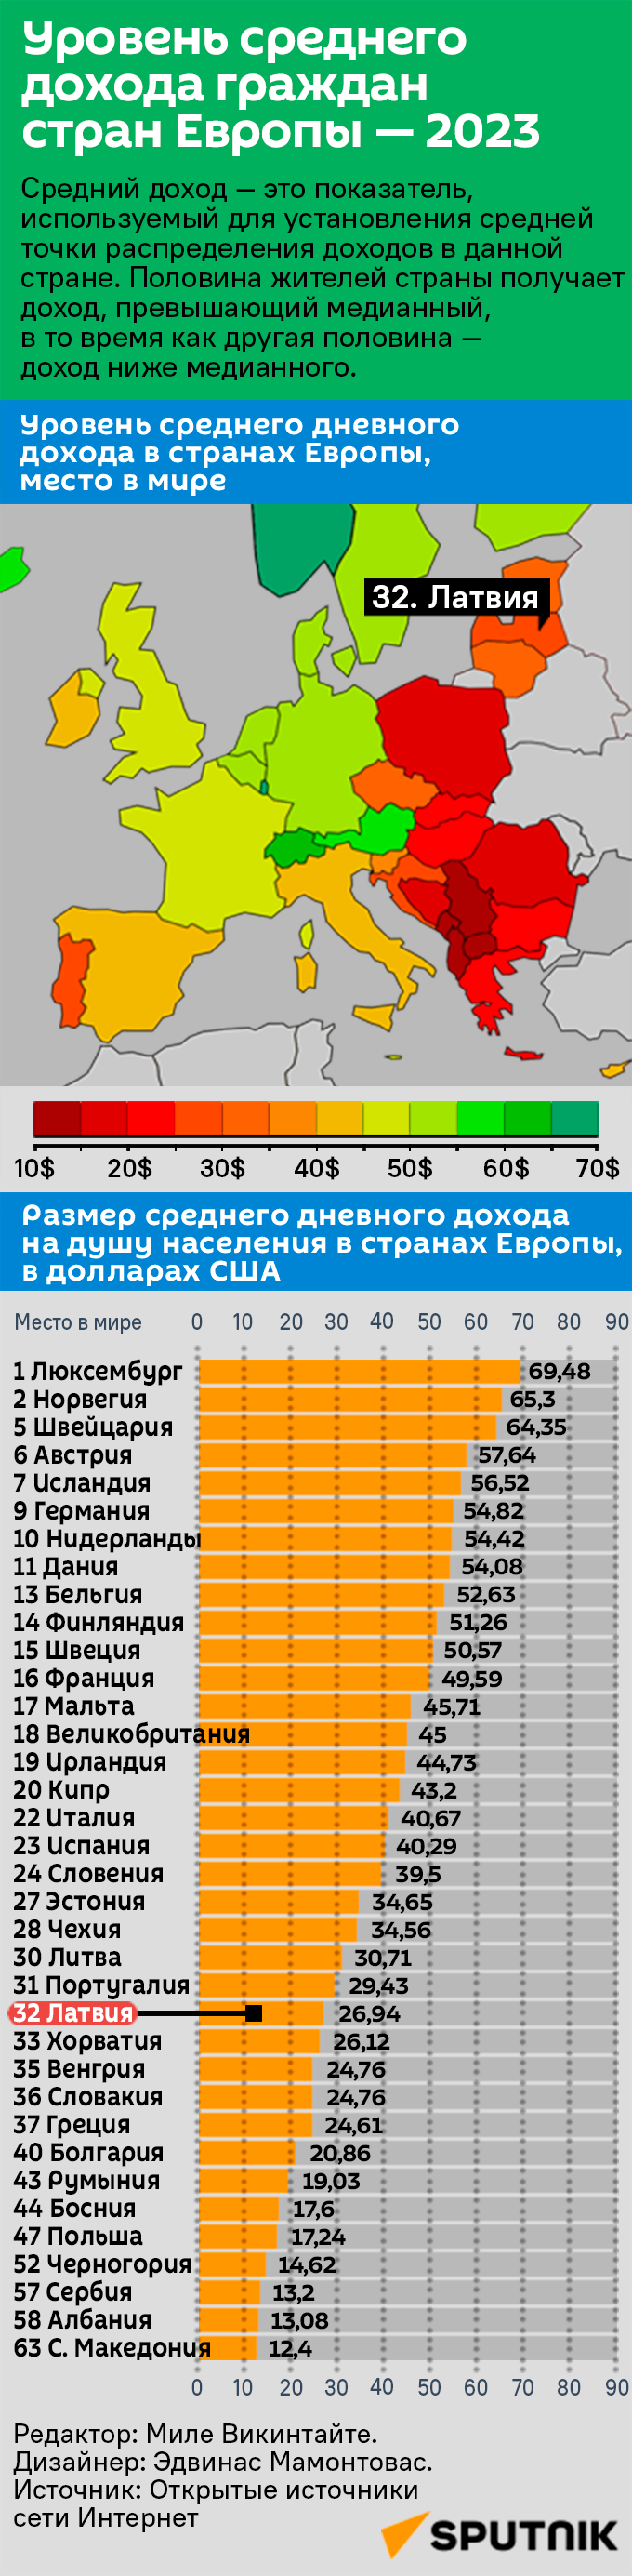 Уровень среднего дохода граждан стран Европы — 2023 - Sputnik Латвия